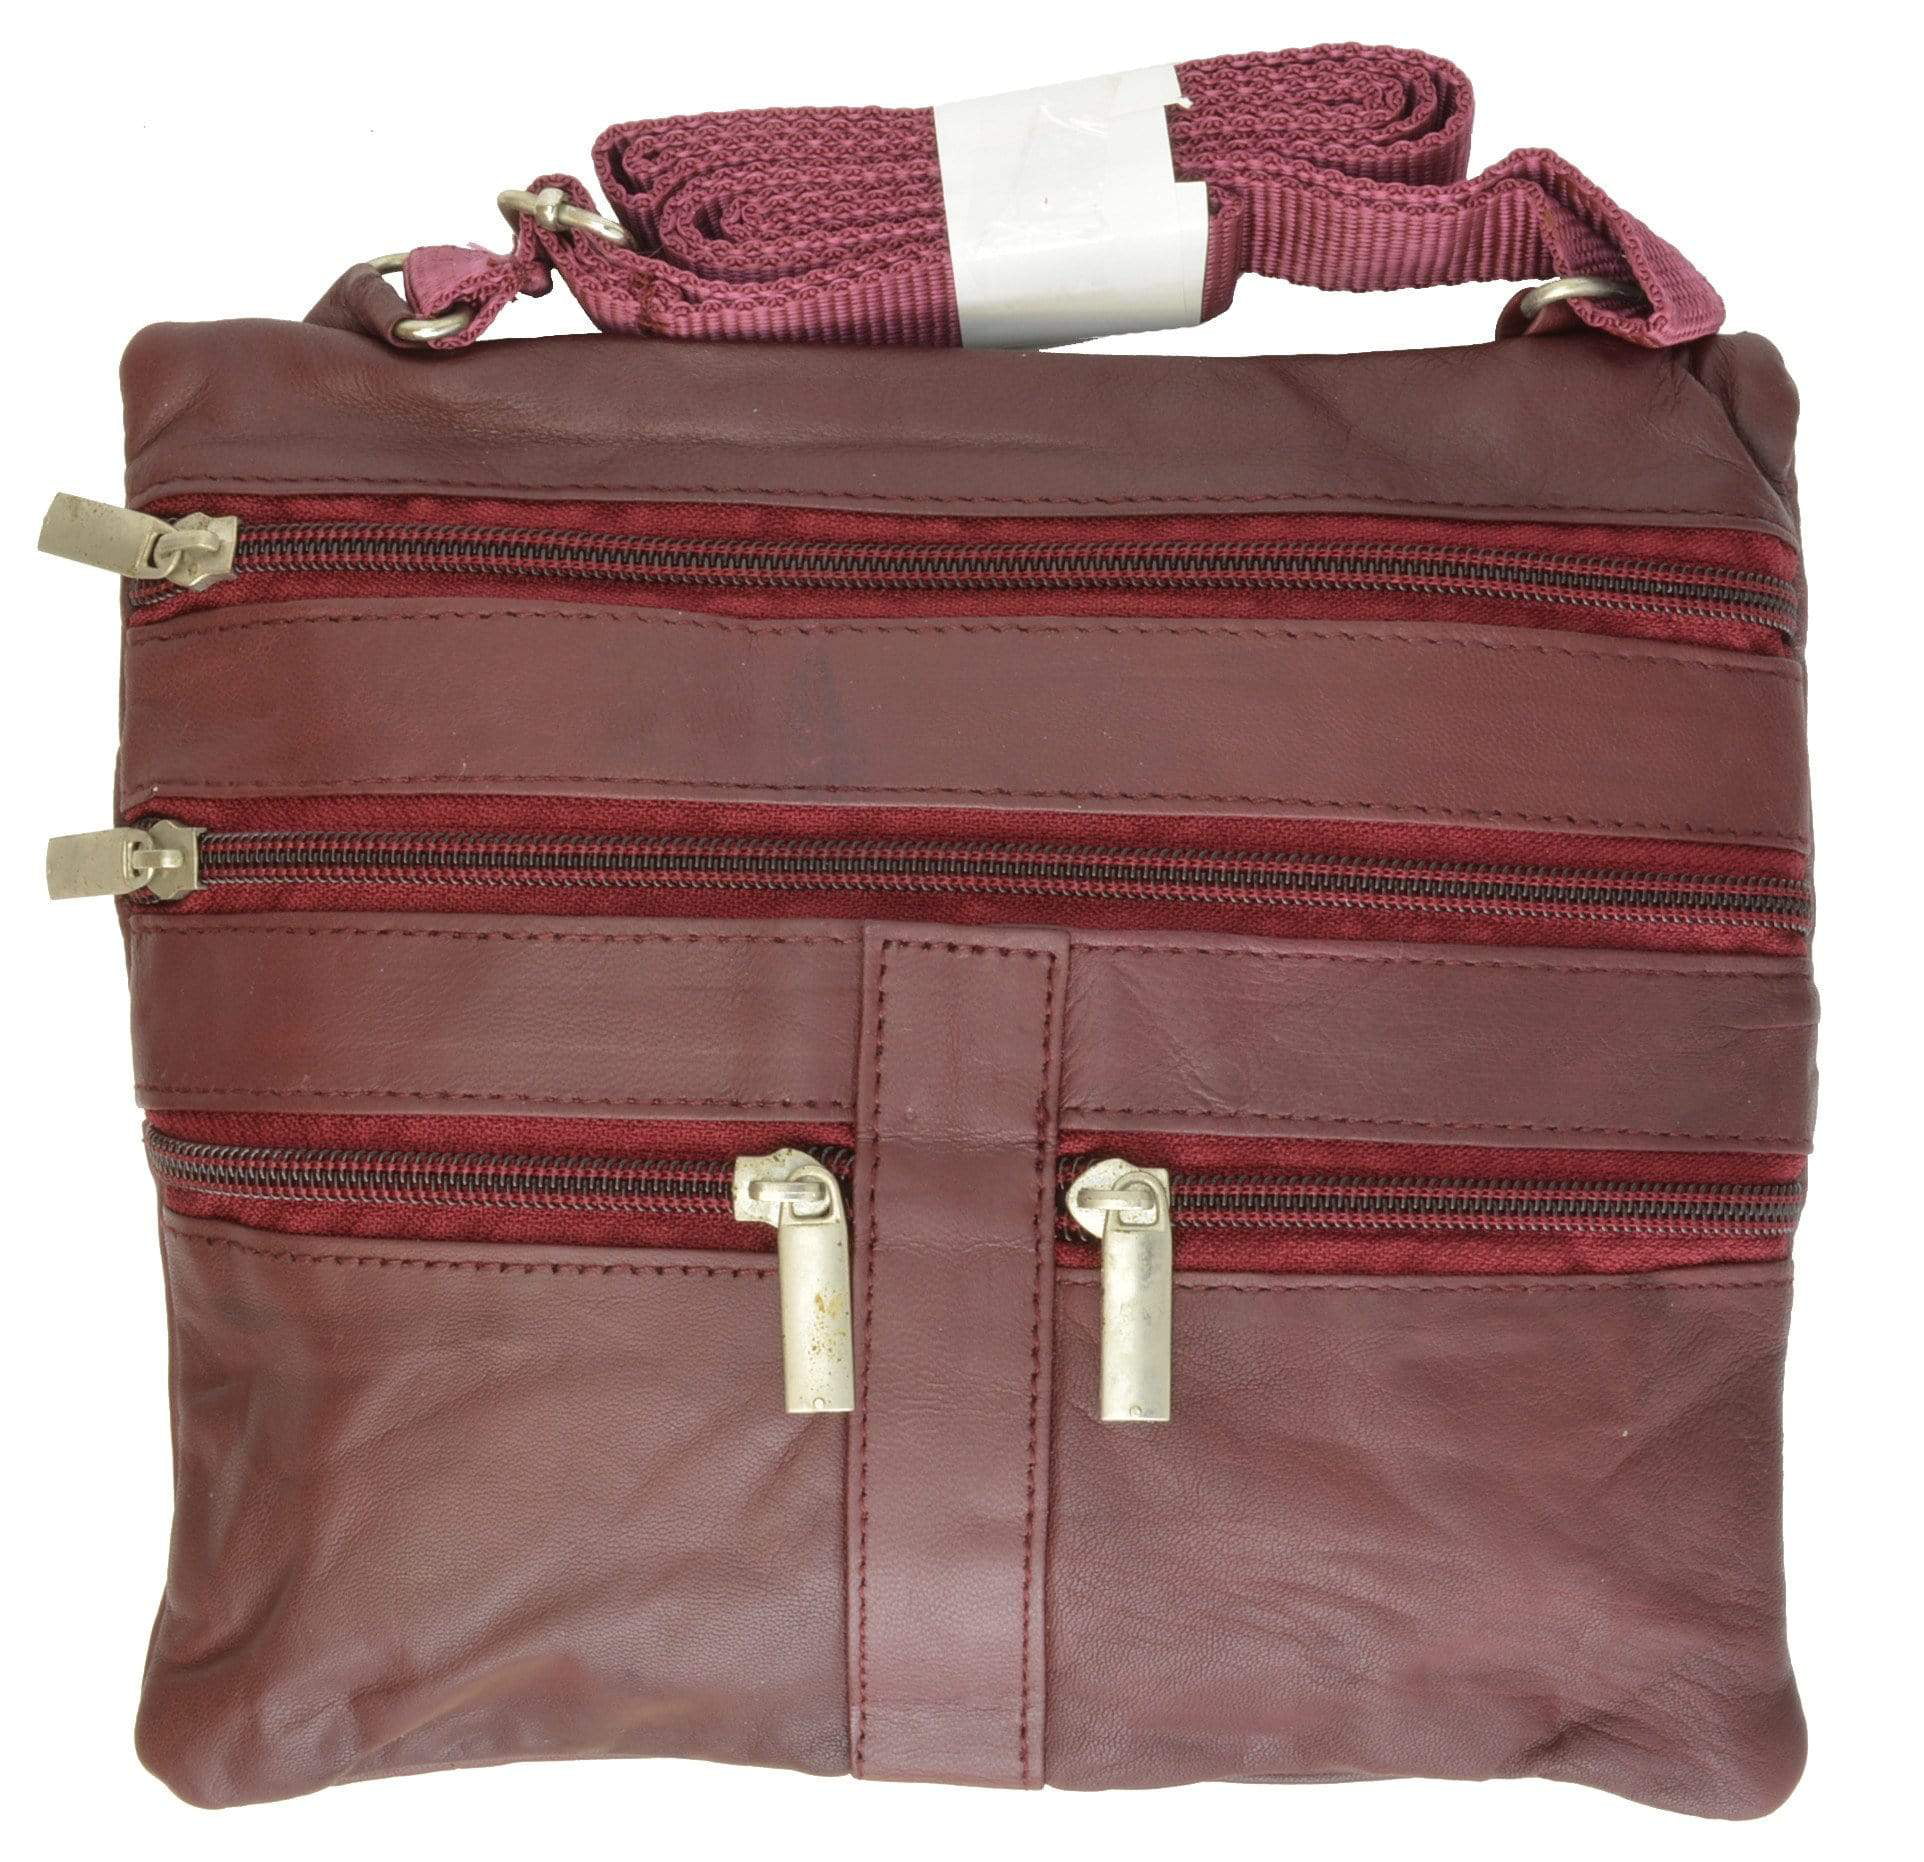 A Travel Shoulder/Unisex Bag With Adjustable Shoulder Strap Internal Pocket. 